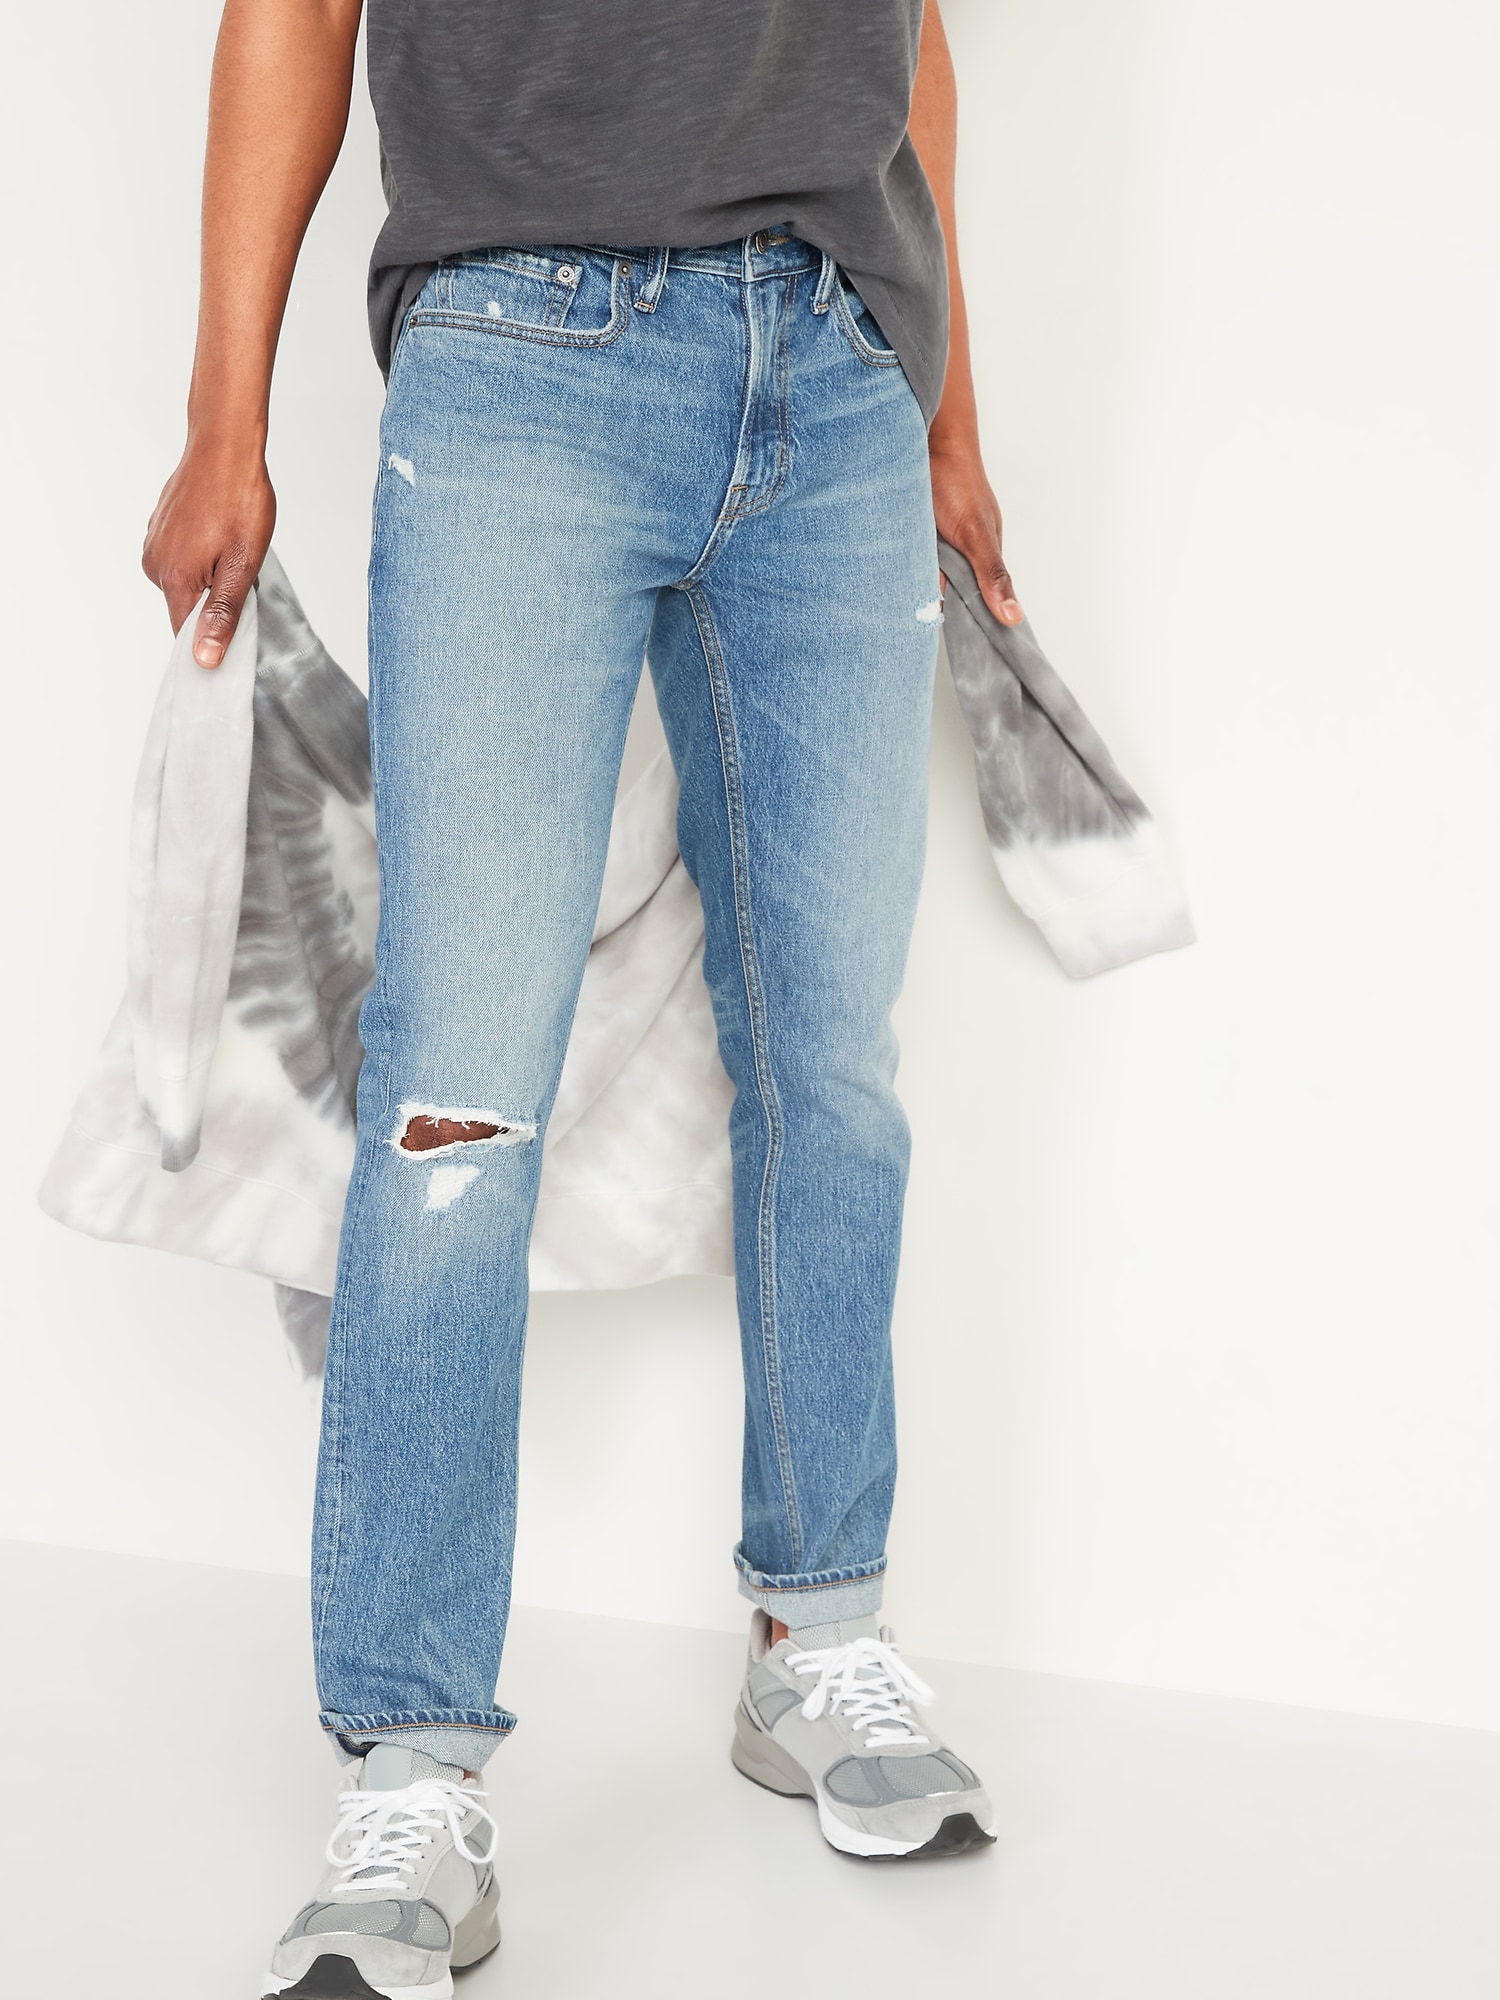 Skinny Built-In Flex Ripped Jeans for Men